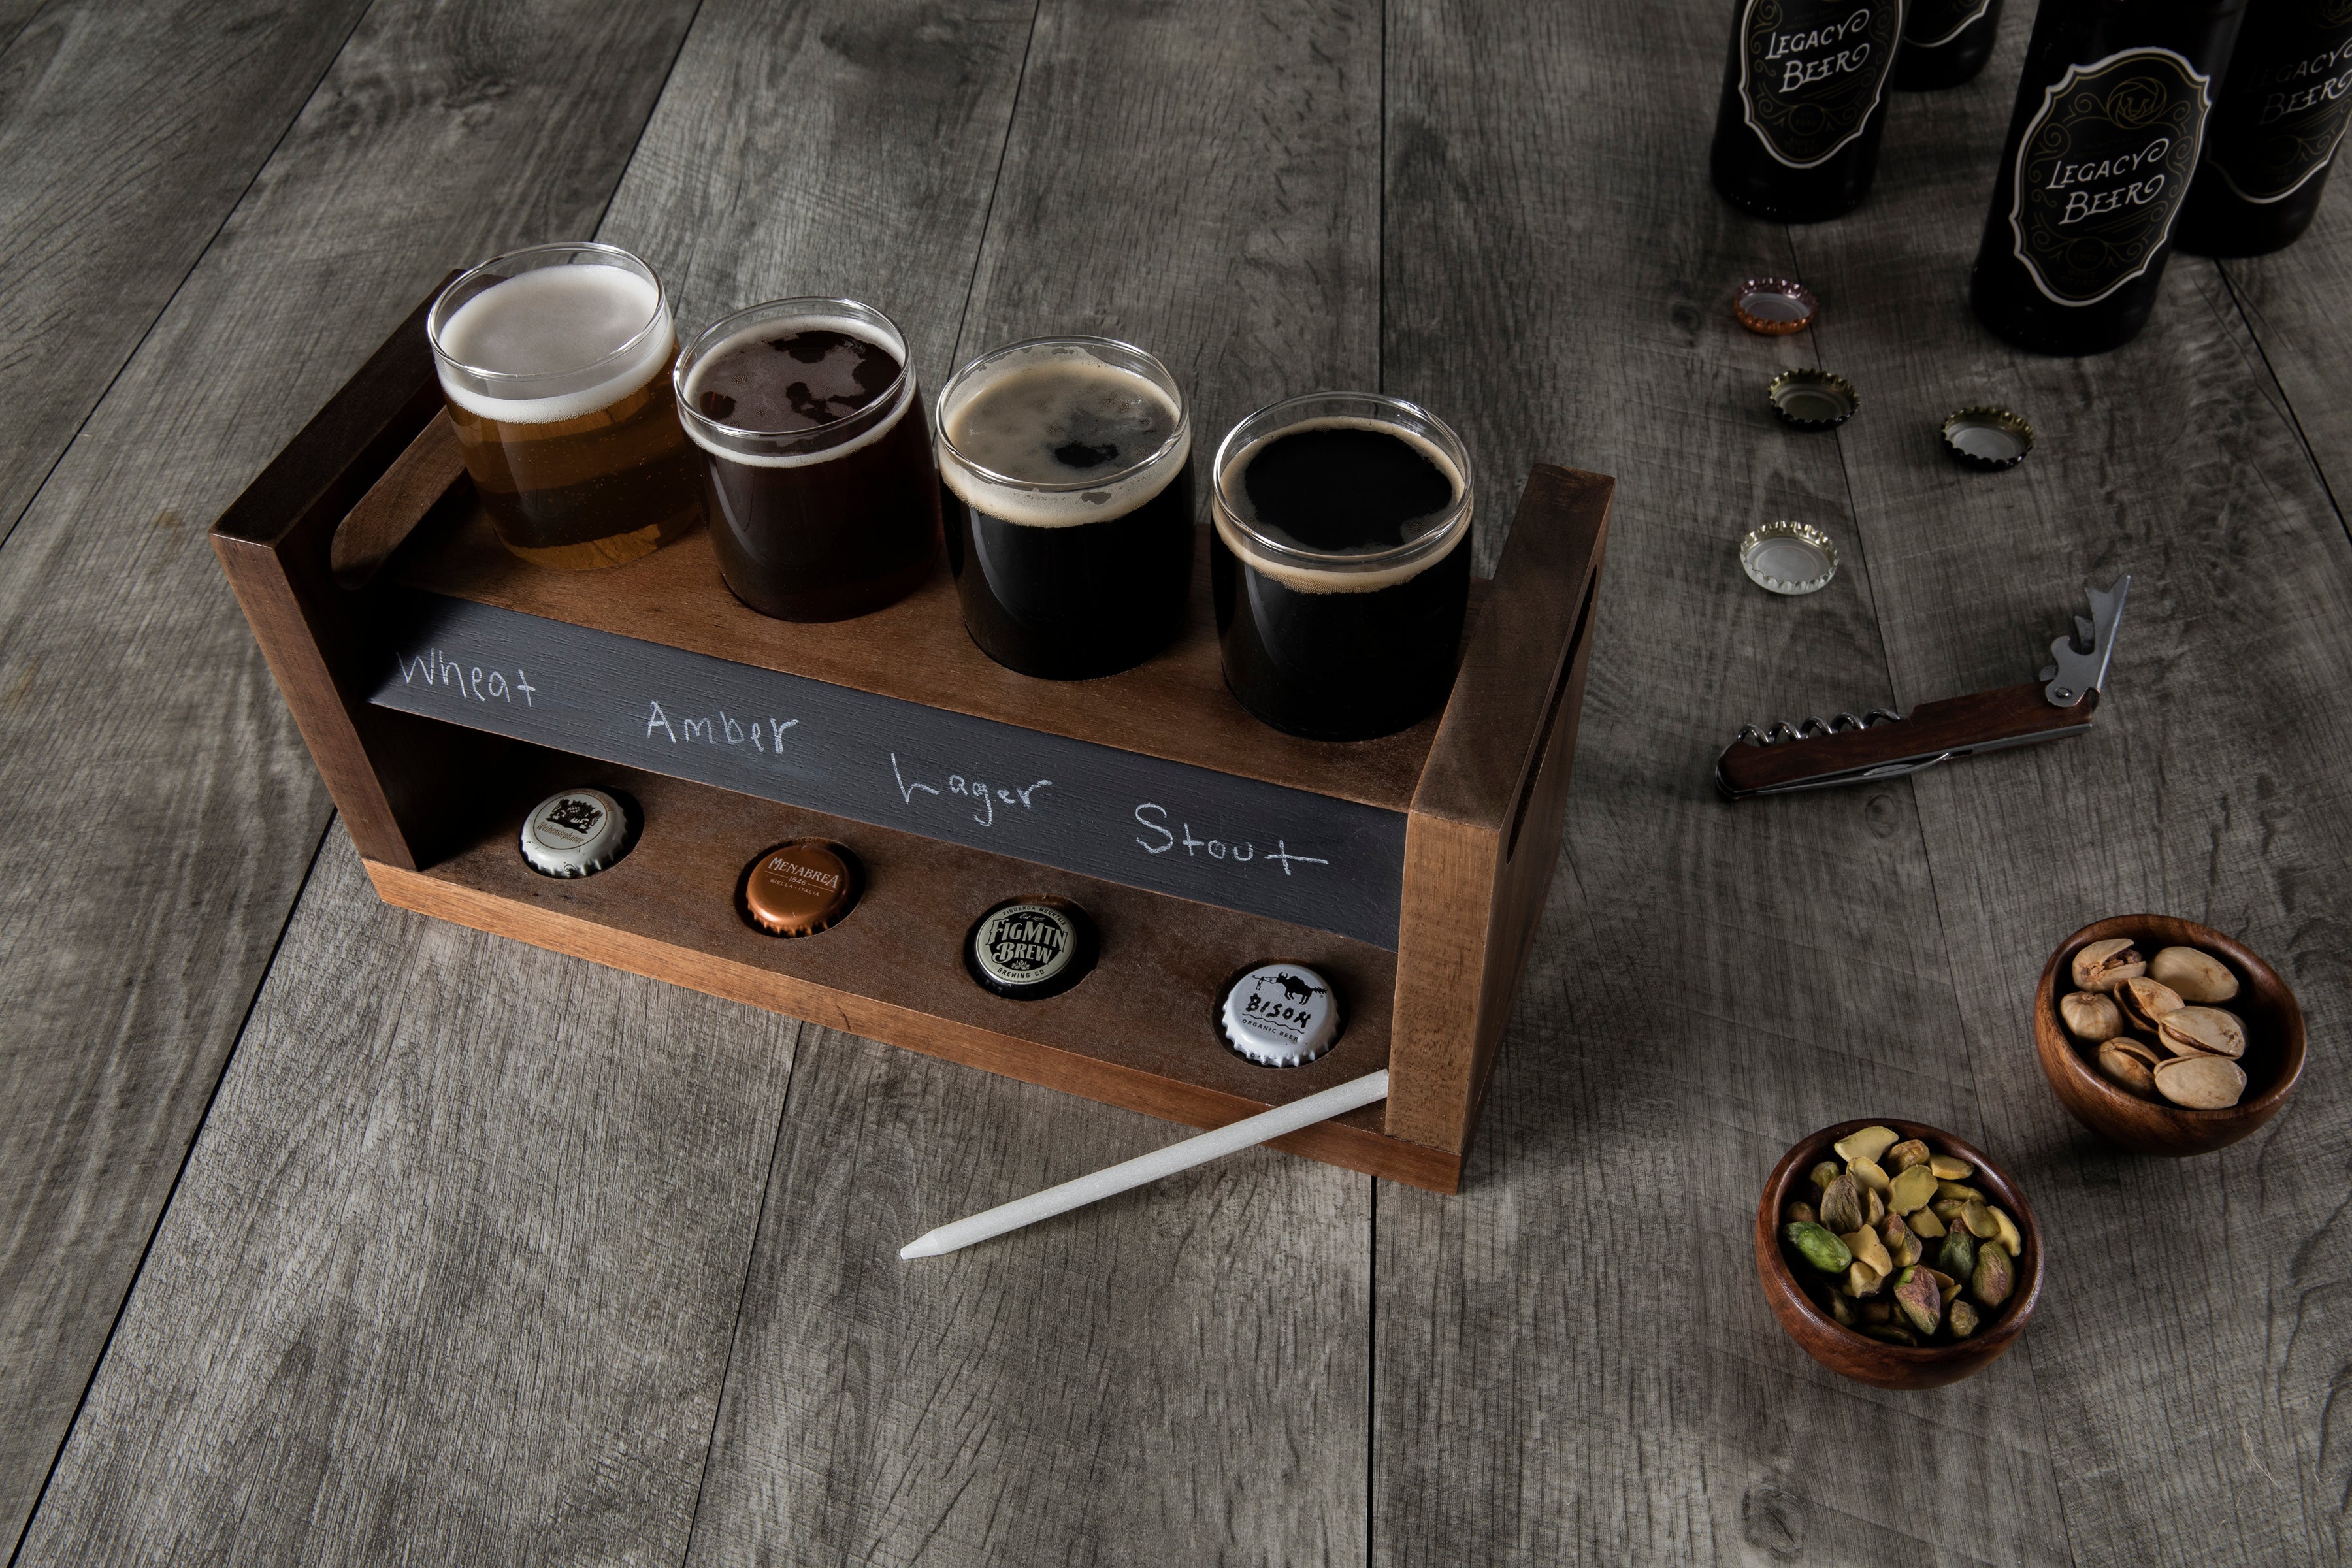 Indianapolis Colts - Craft Beer Flight Beverage Sampler